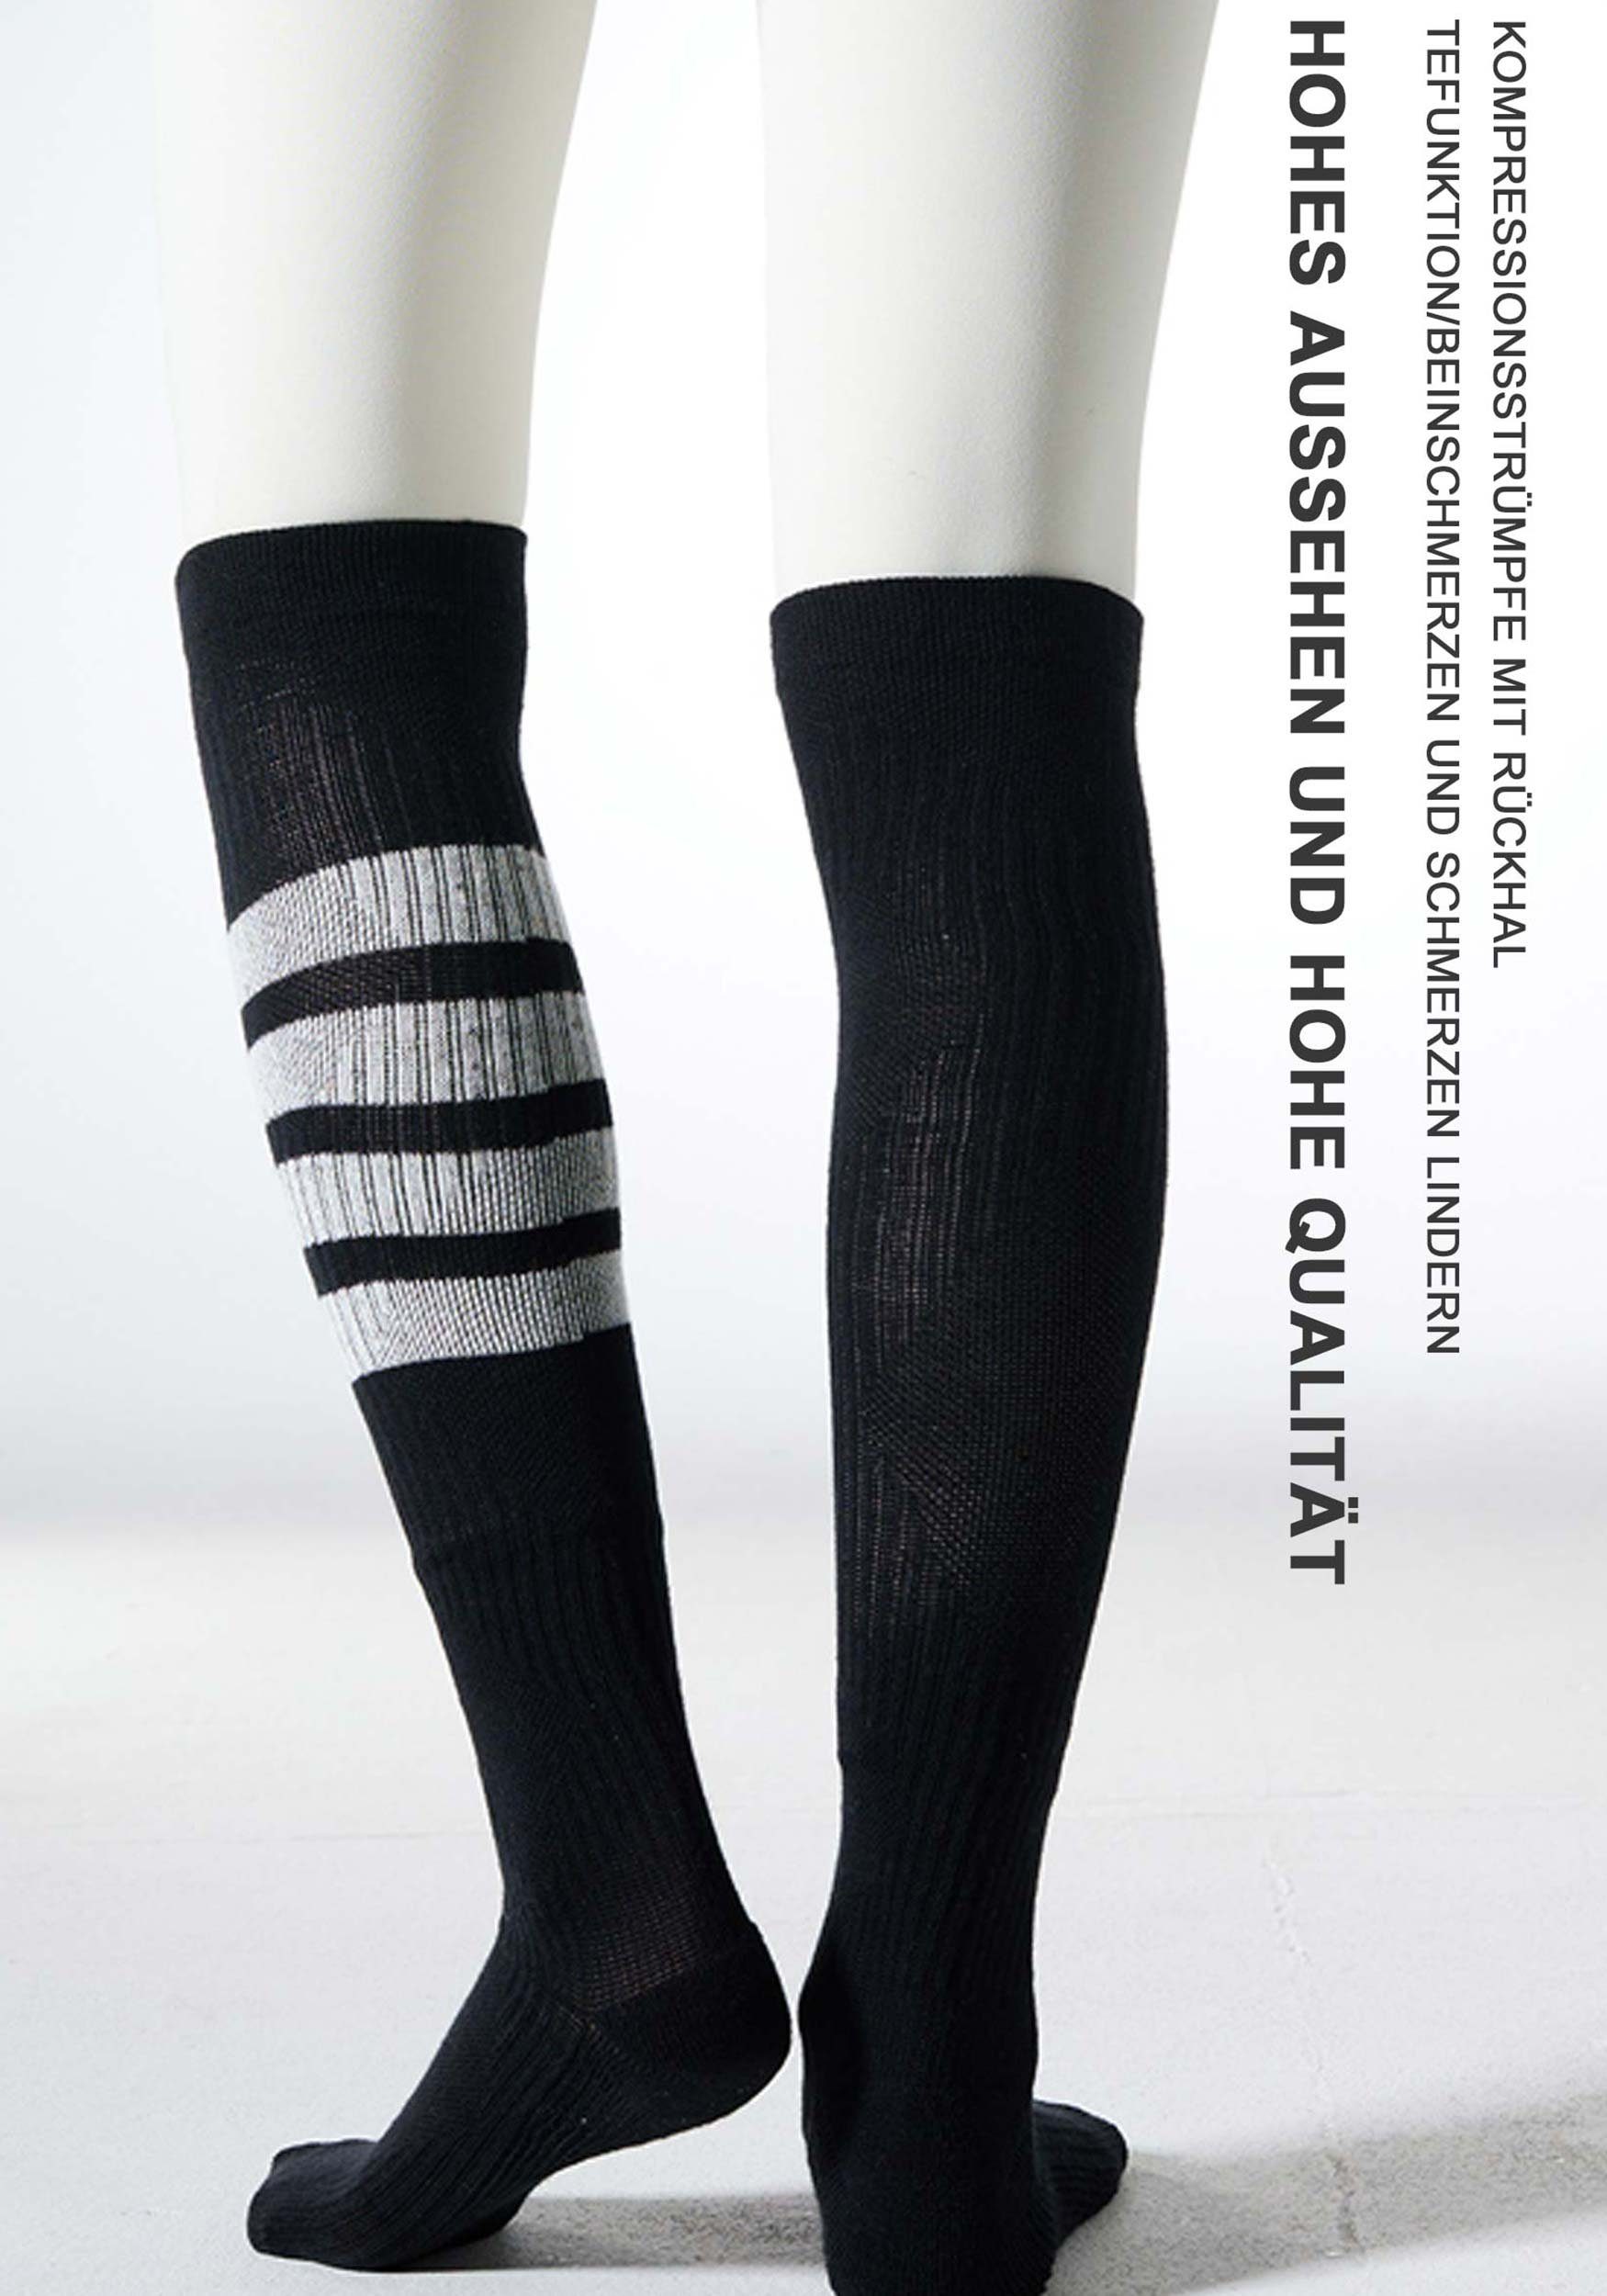 Kniestrümpfe Schwarz College Socken gute Strümpfe Kniestrümpfe Elastizität,Starke Streifenmusterdesign,sehr 2er-Pack Damen Ladies MAGICSHE